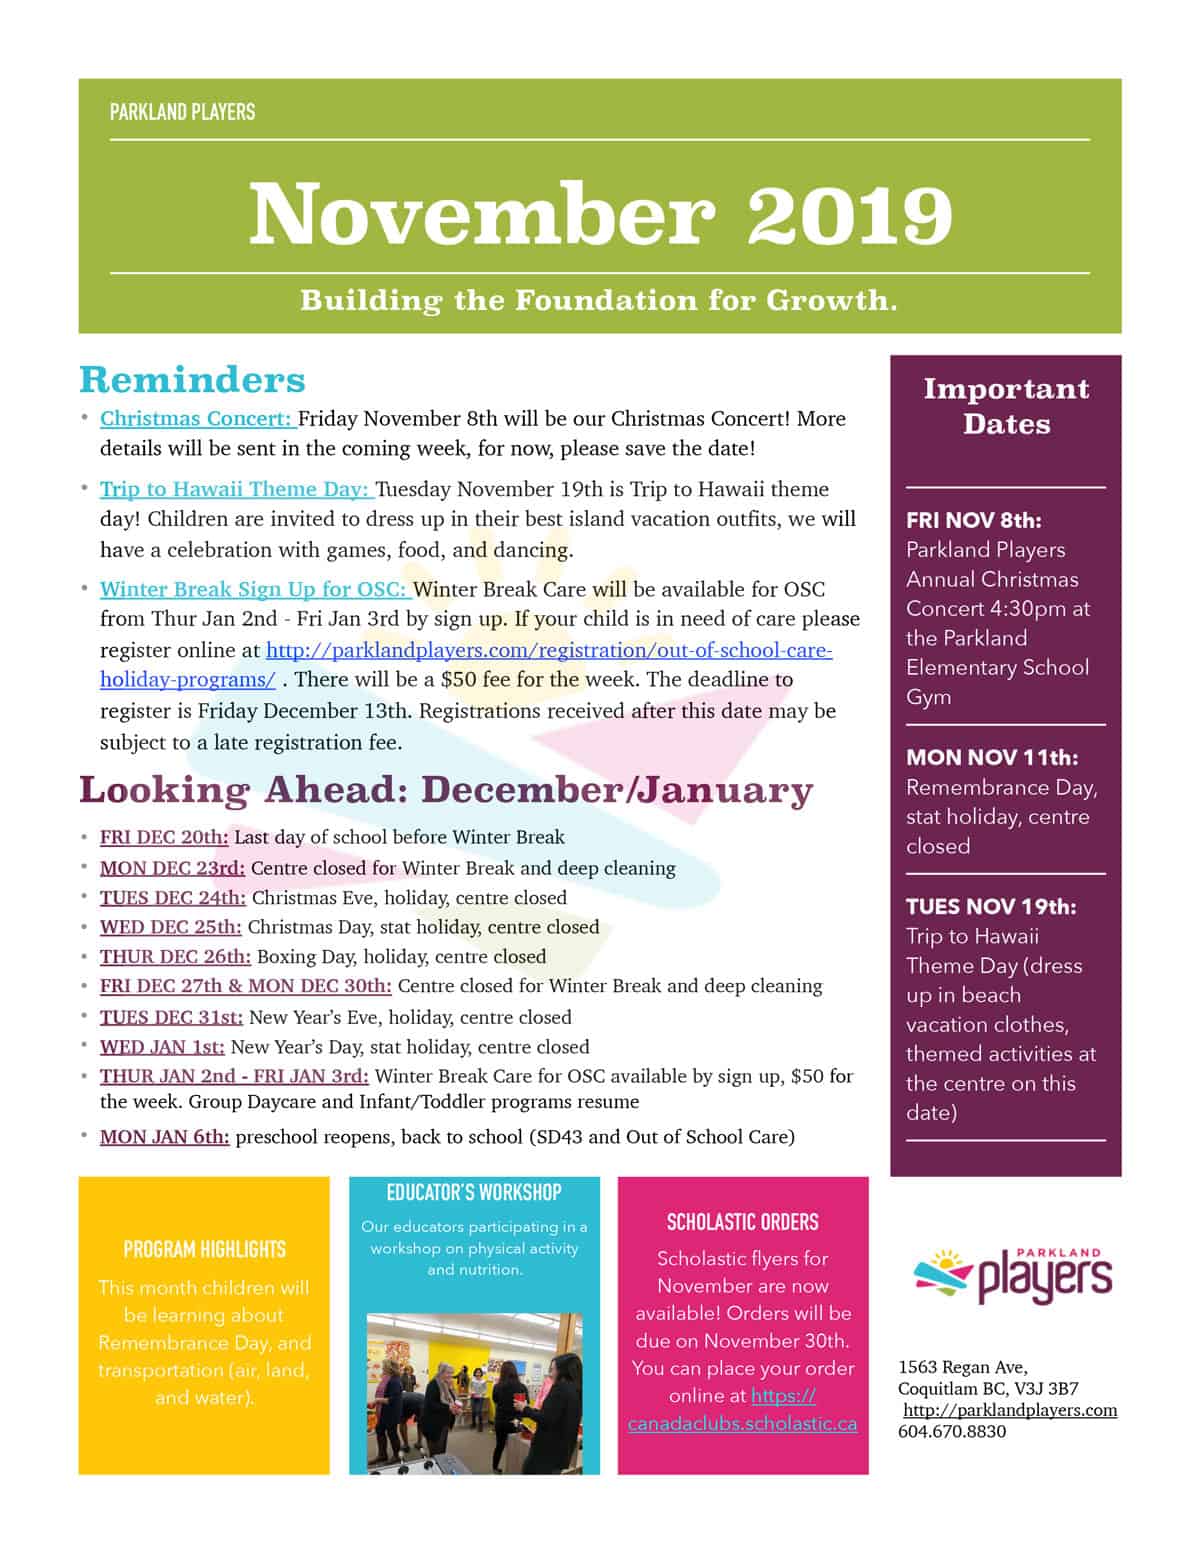 November 2019 Newsletter